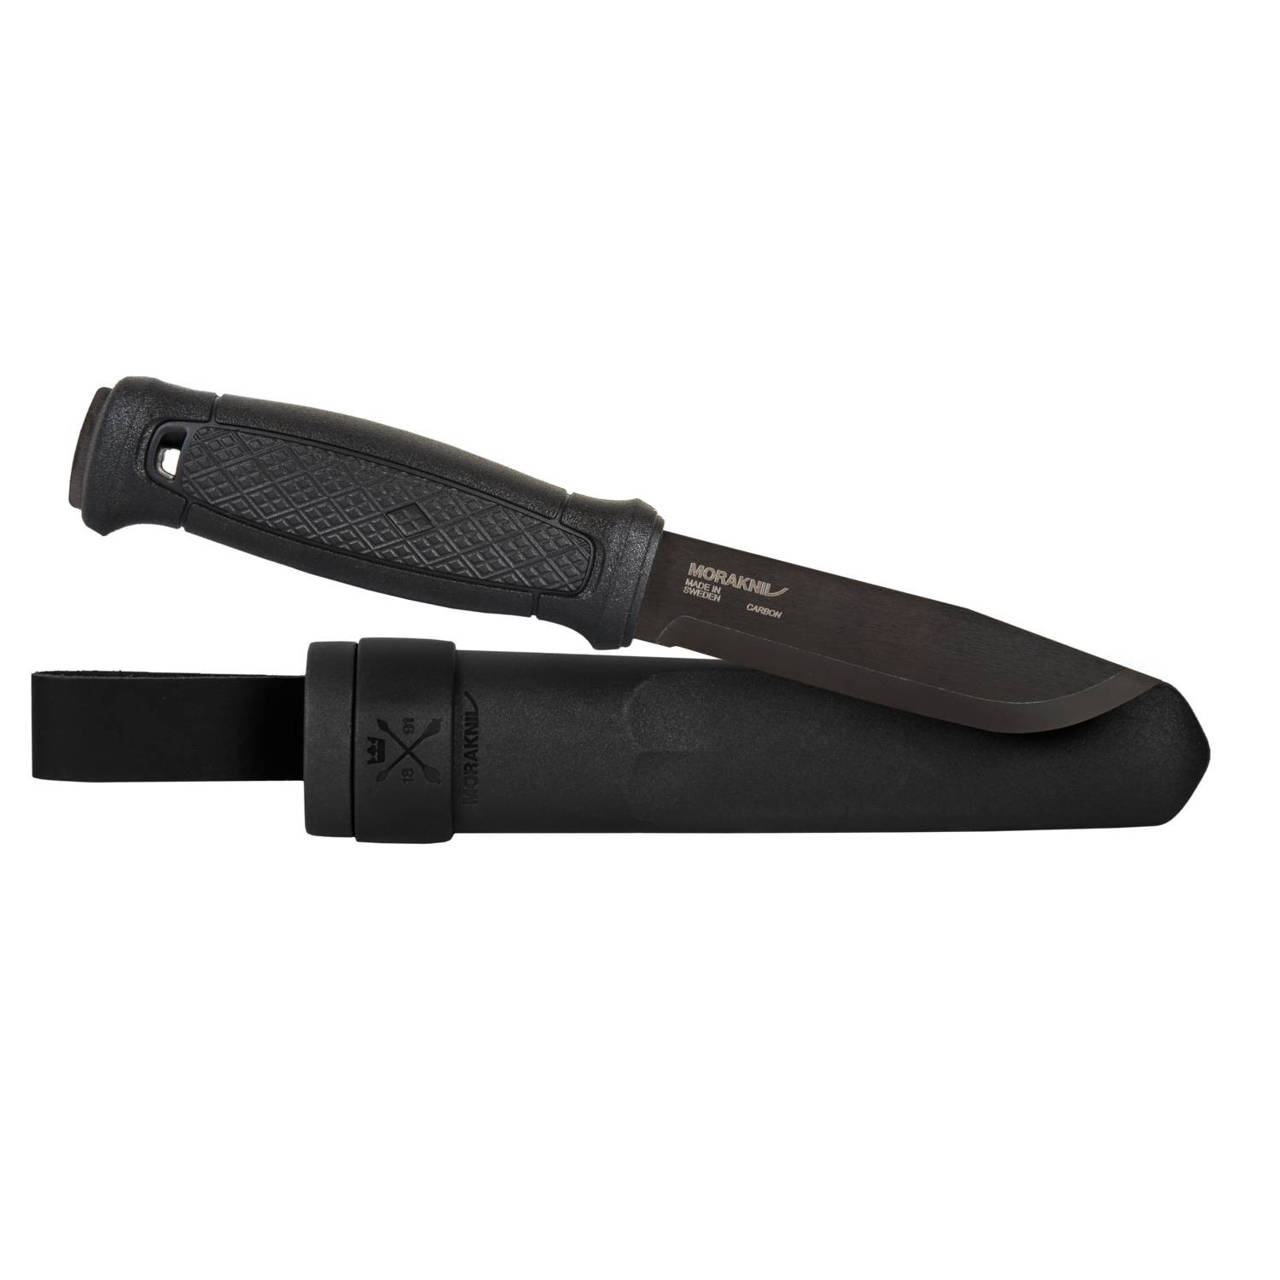 Mora Sweden Morakniv Basic 511 Skinner Carbon Steel Blade Knife Set of 2  for sale online